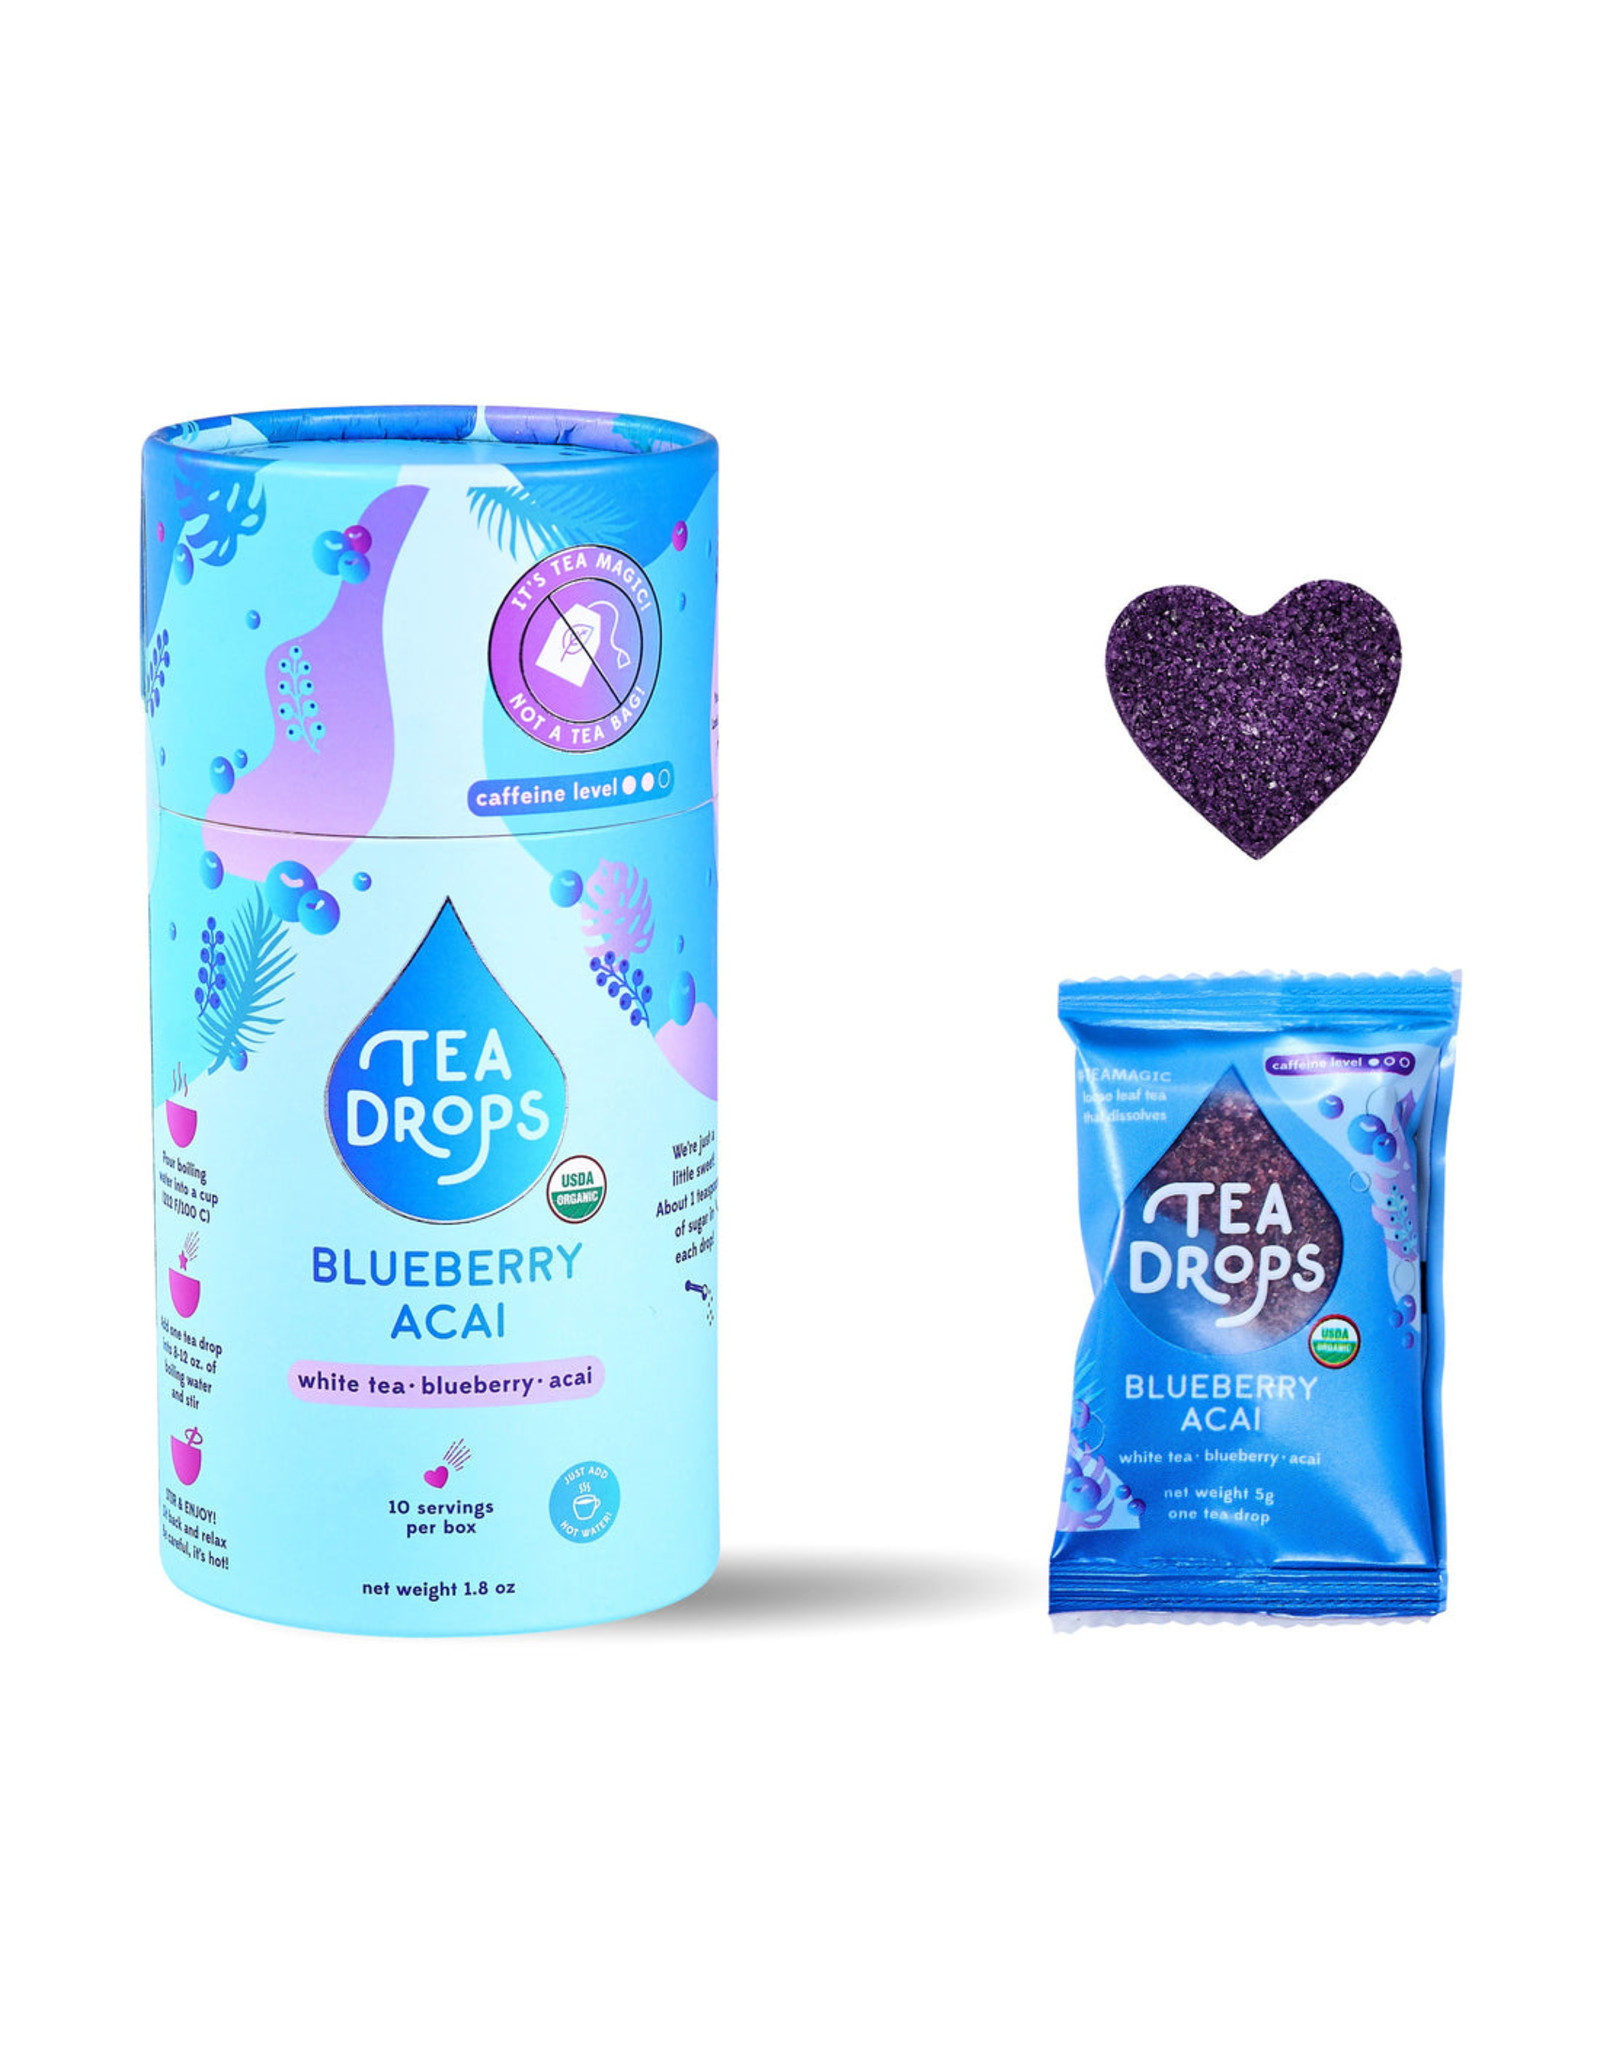 Tea Drops Blueberry Acai Tea Drops - 10 count